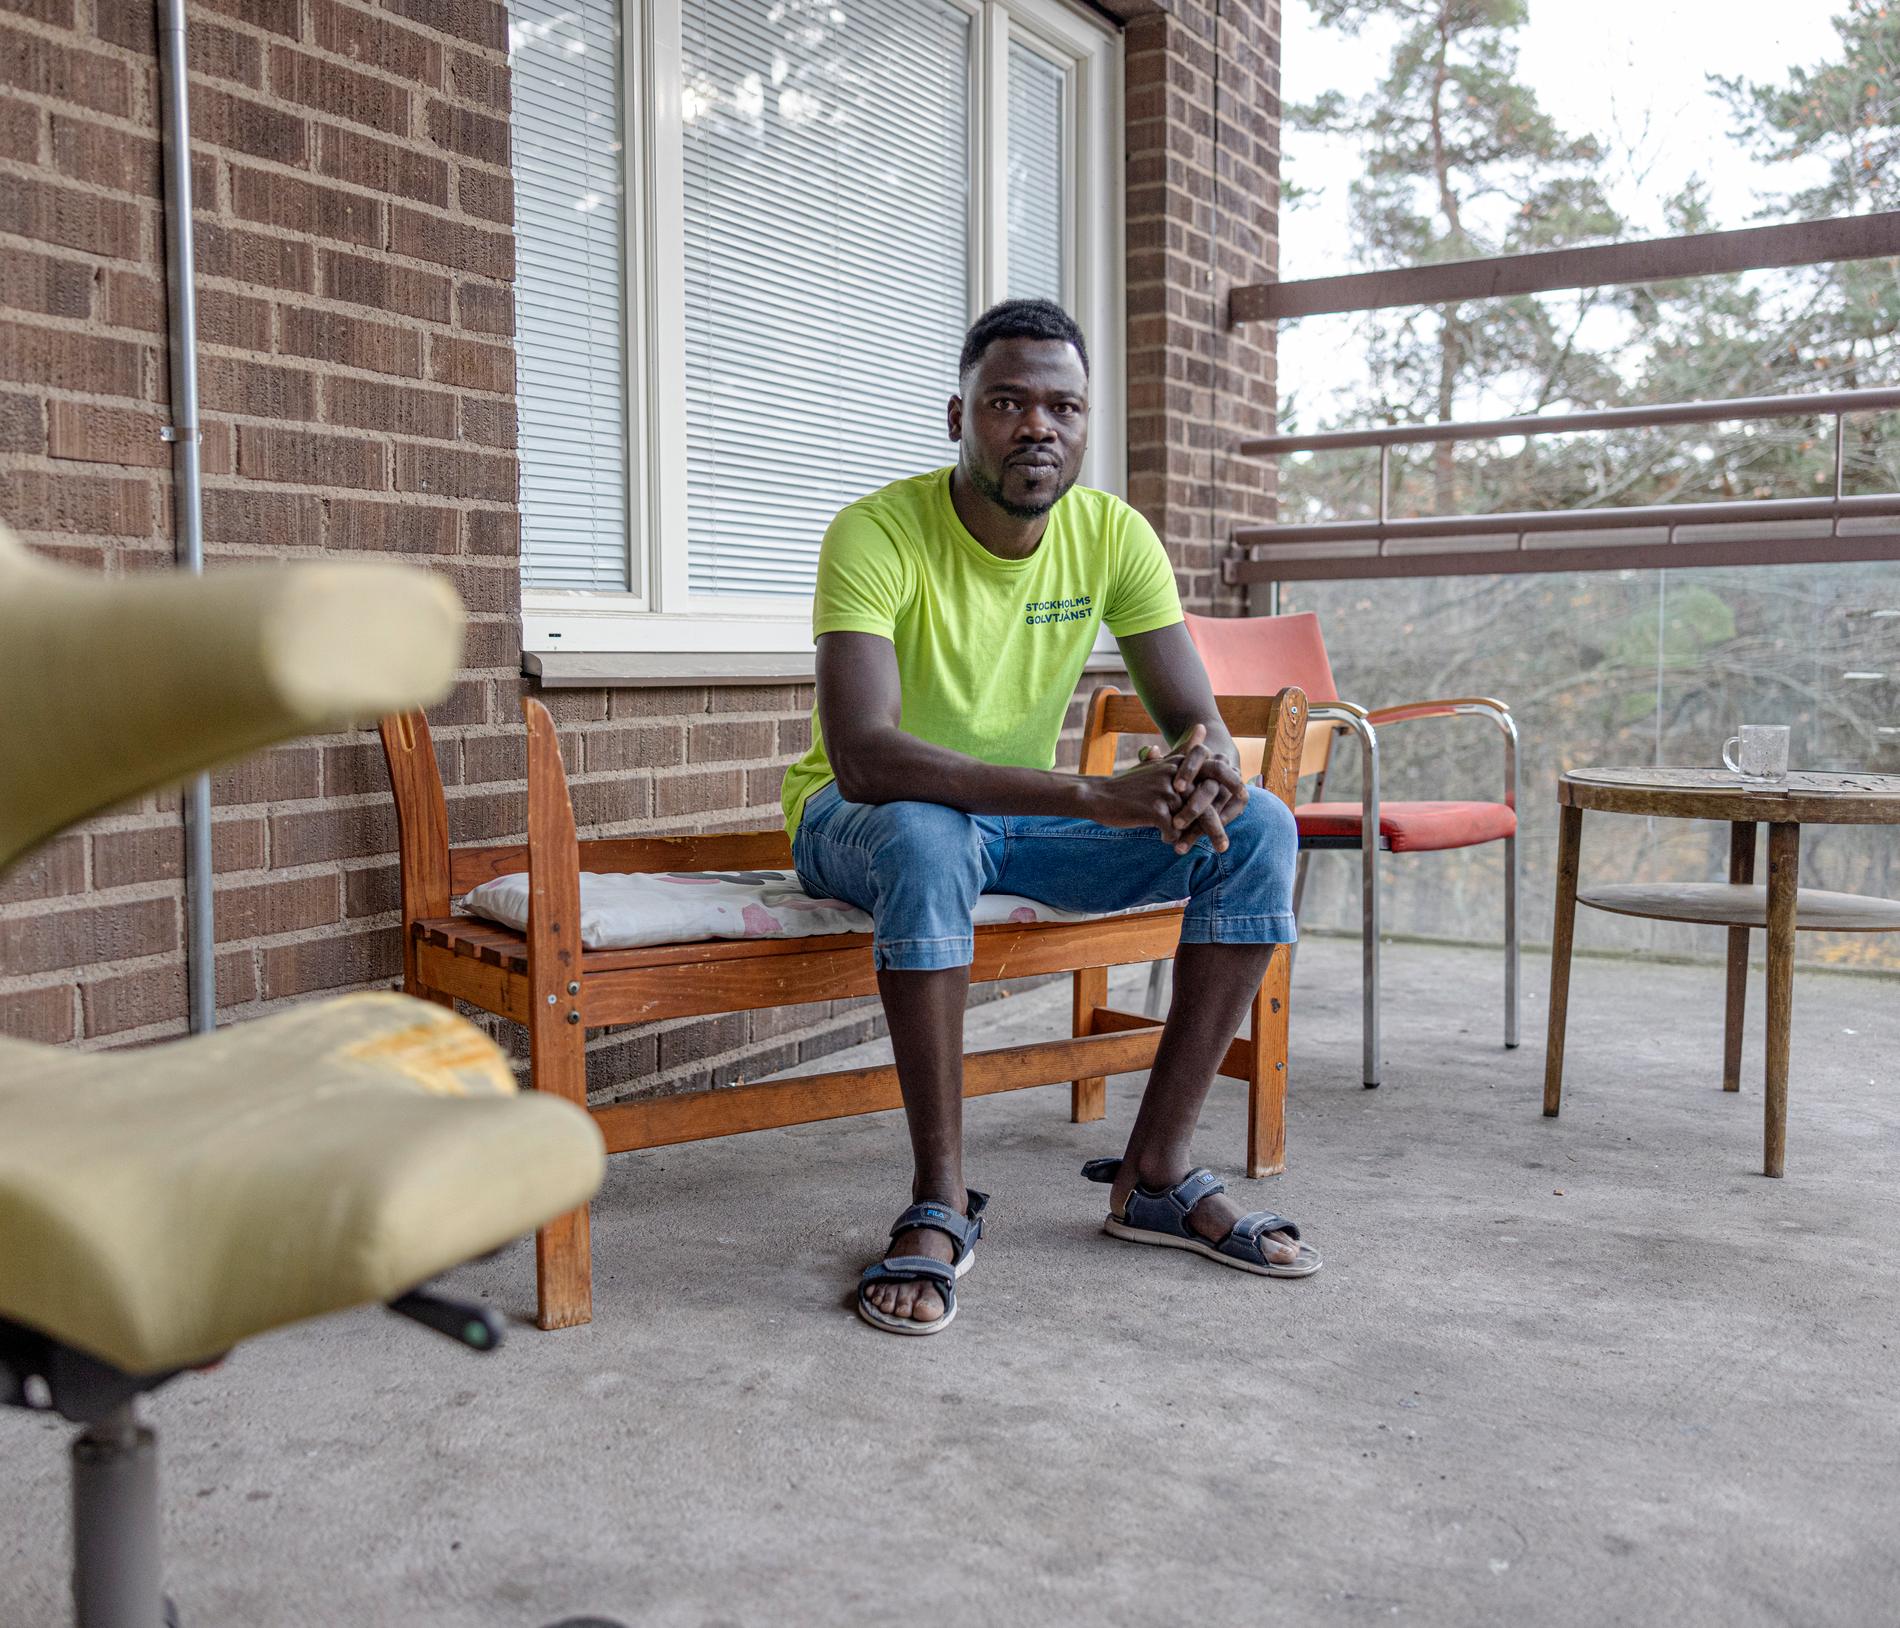 Abdelrahman Adam, 26, har kommit som kvotflykting från Sudan. Kontrakten med Migrationsverket är på två år, han har bott här i snart ett och ett halvt år. ”Jag trivs här”, säger han.